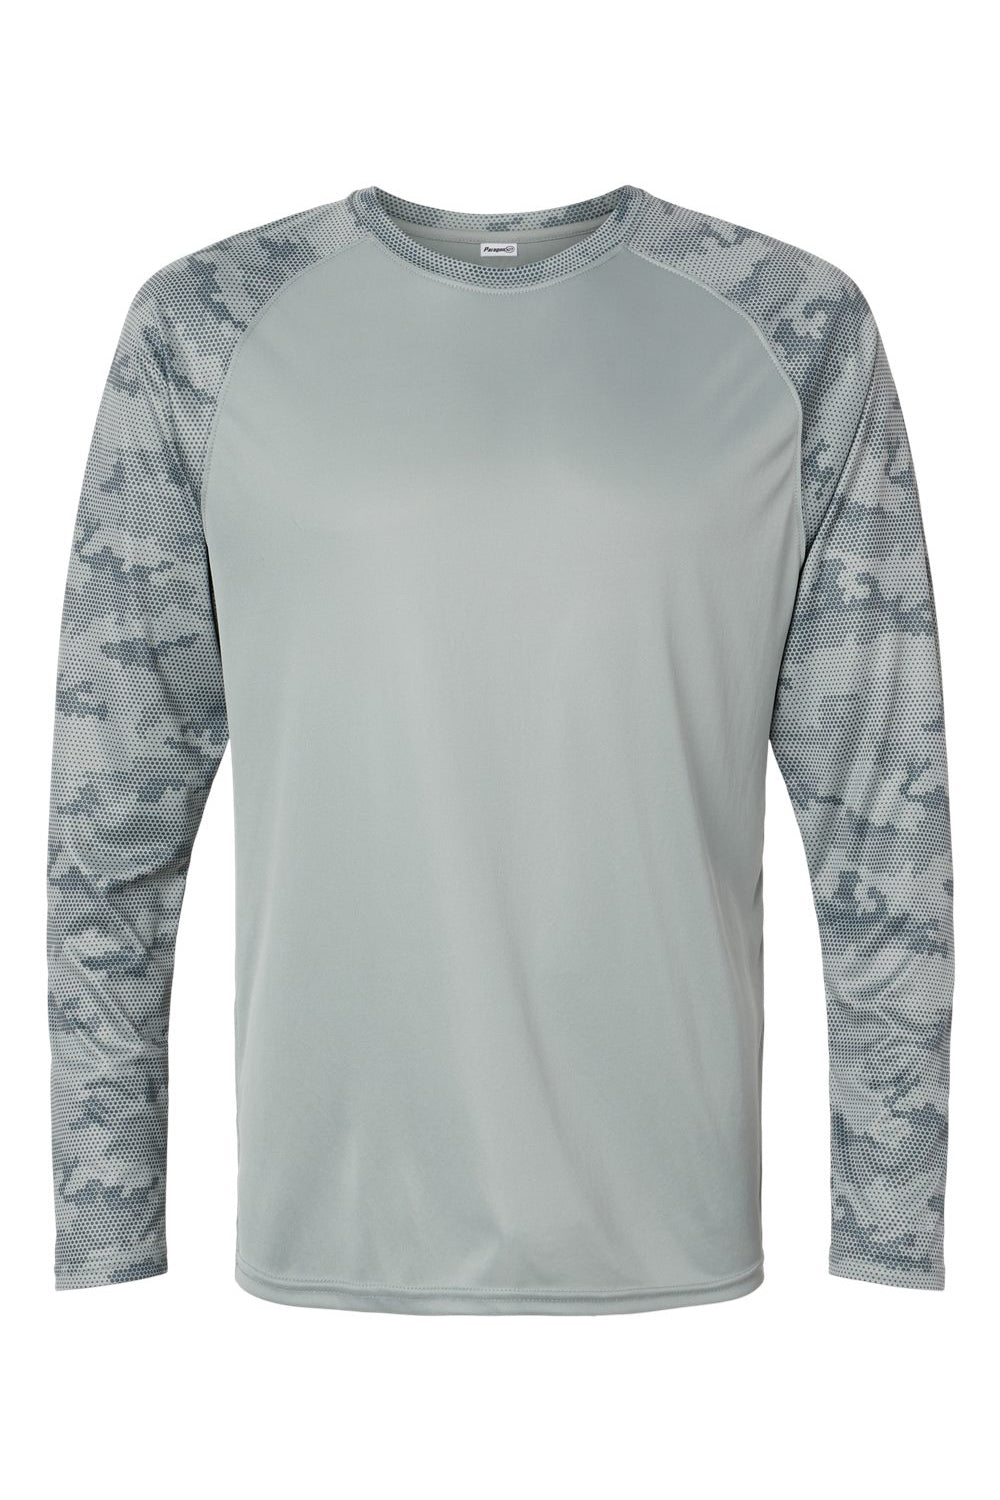 Paragon 216 Mens Cayman Performance Camo Colorblocked Long Sleeve Crewneck T-Shirt Medium Grey Flat Front